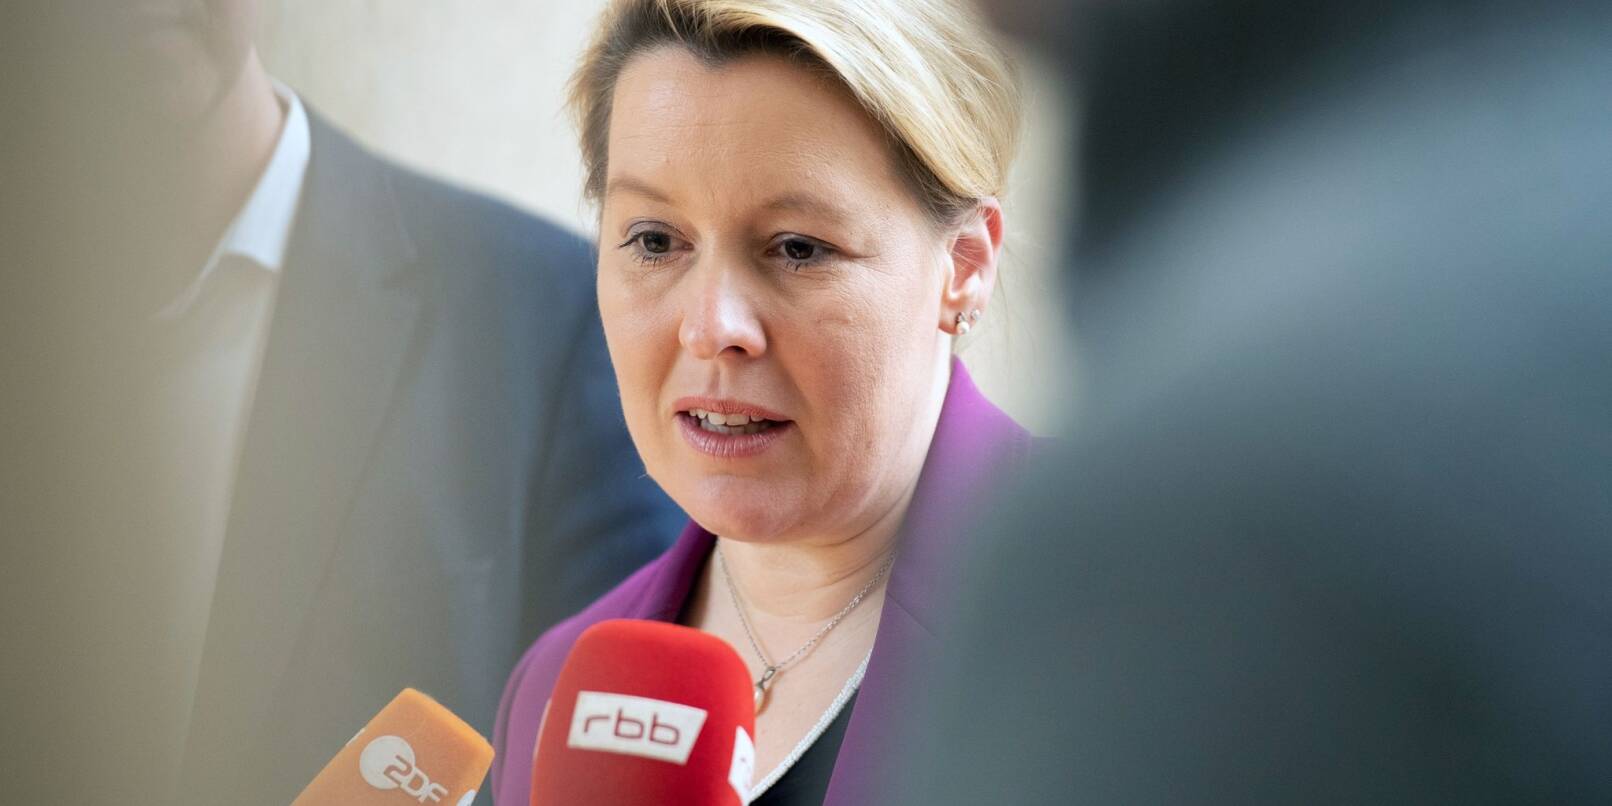 Kritisiert kumpelhaftes Gehabe und männliche Rituale in der Politik: Franziska Giffey (SPD).